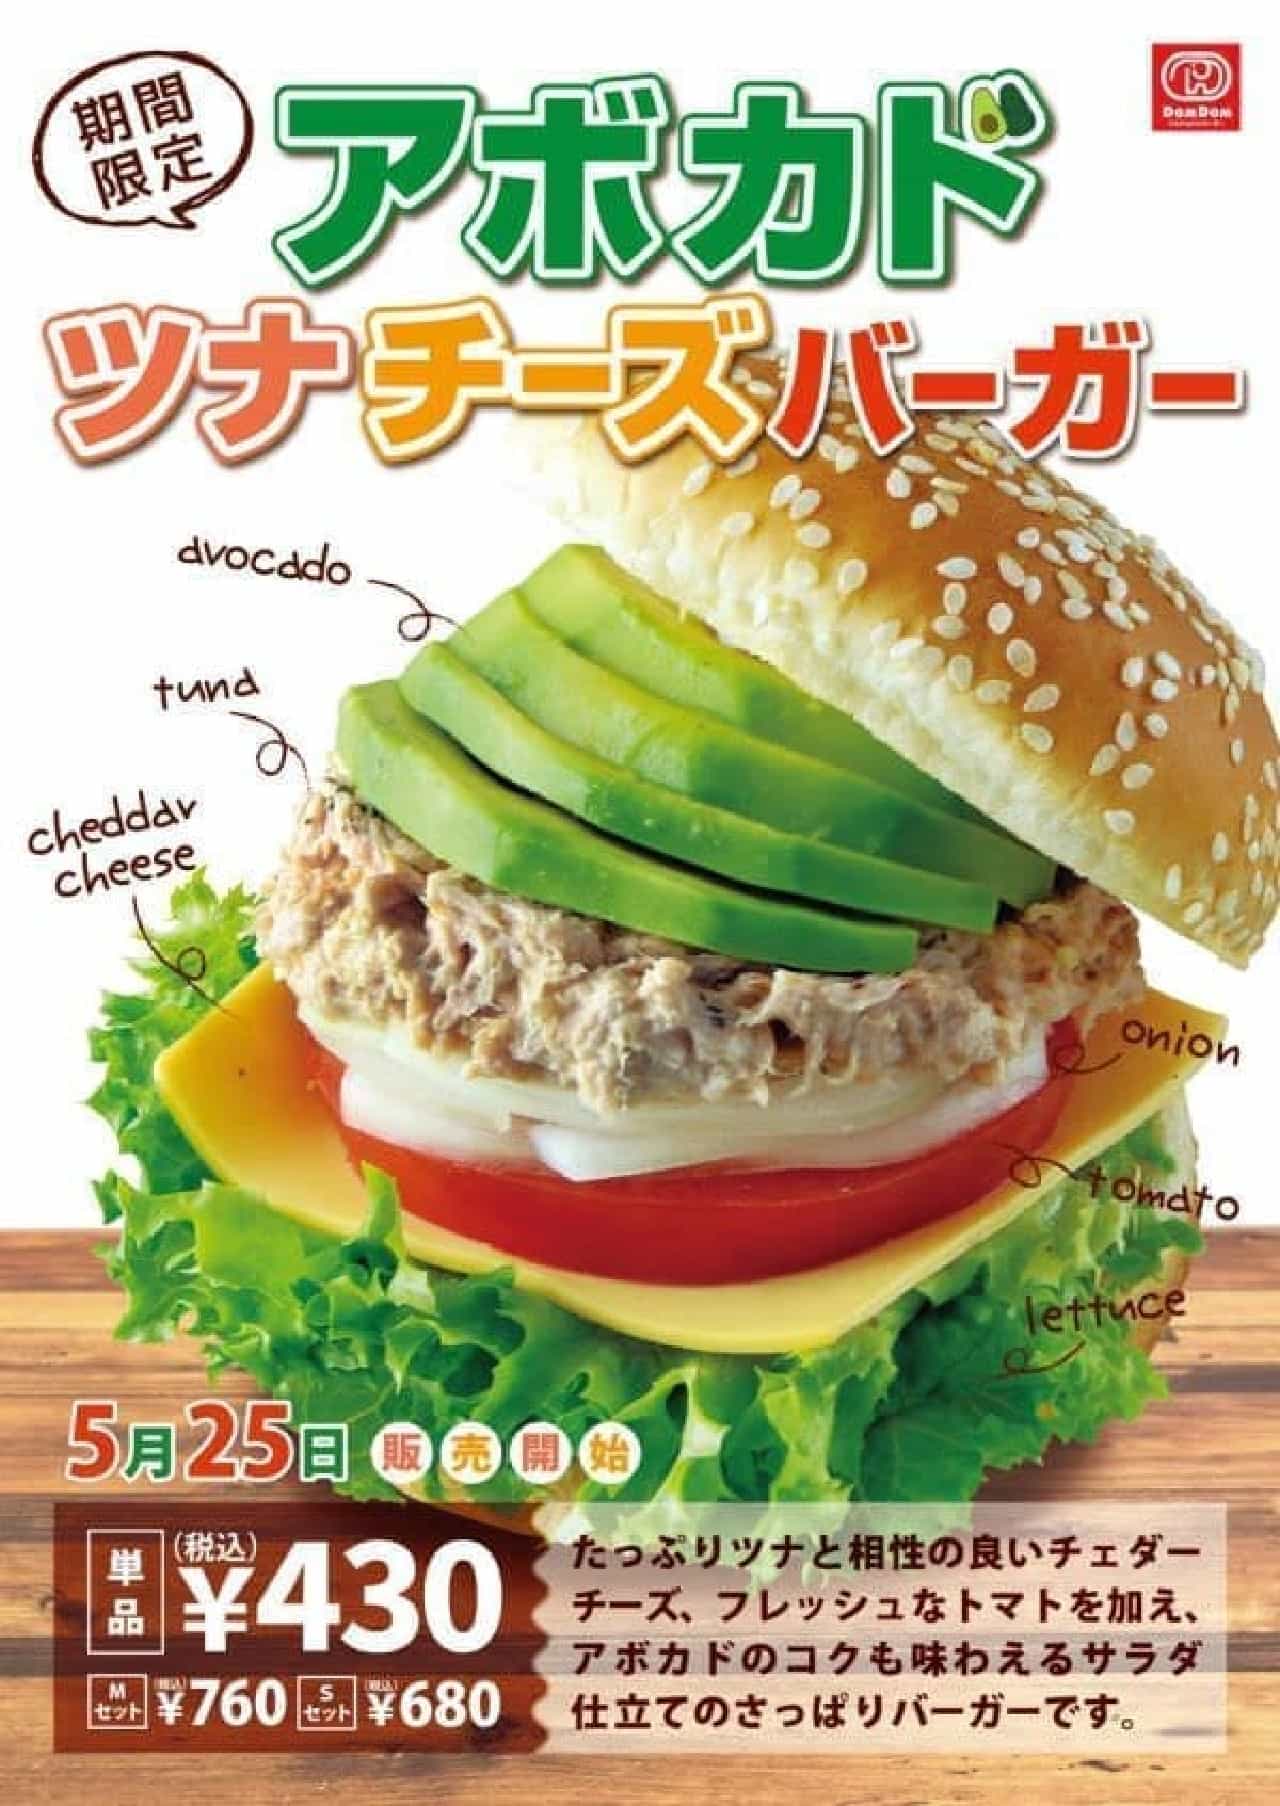 ドムドムハンバーガーに5月の新商品「アボカドツナチーズバーガー」